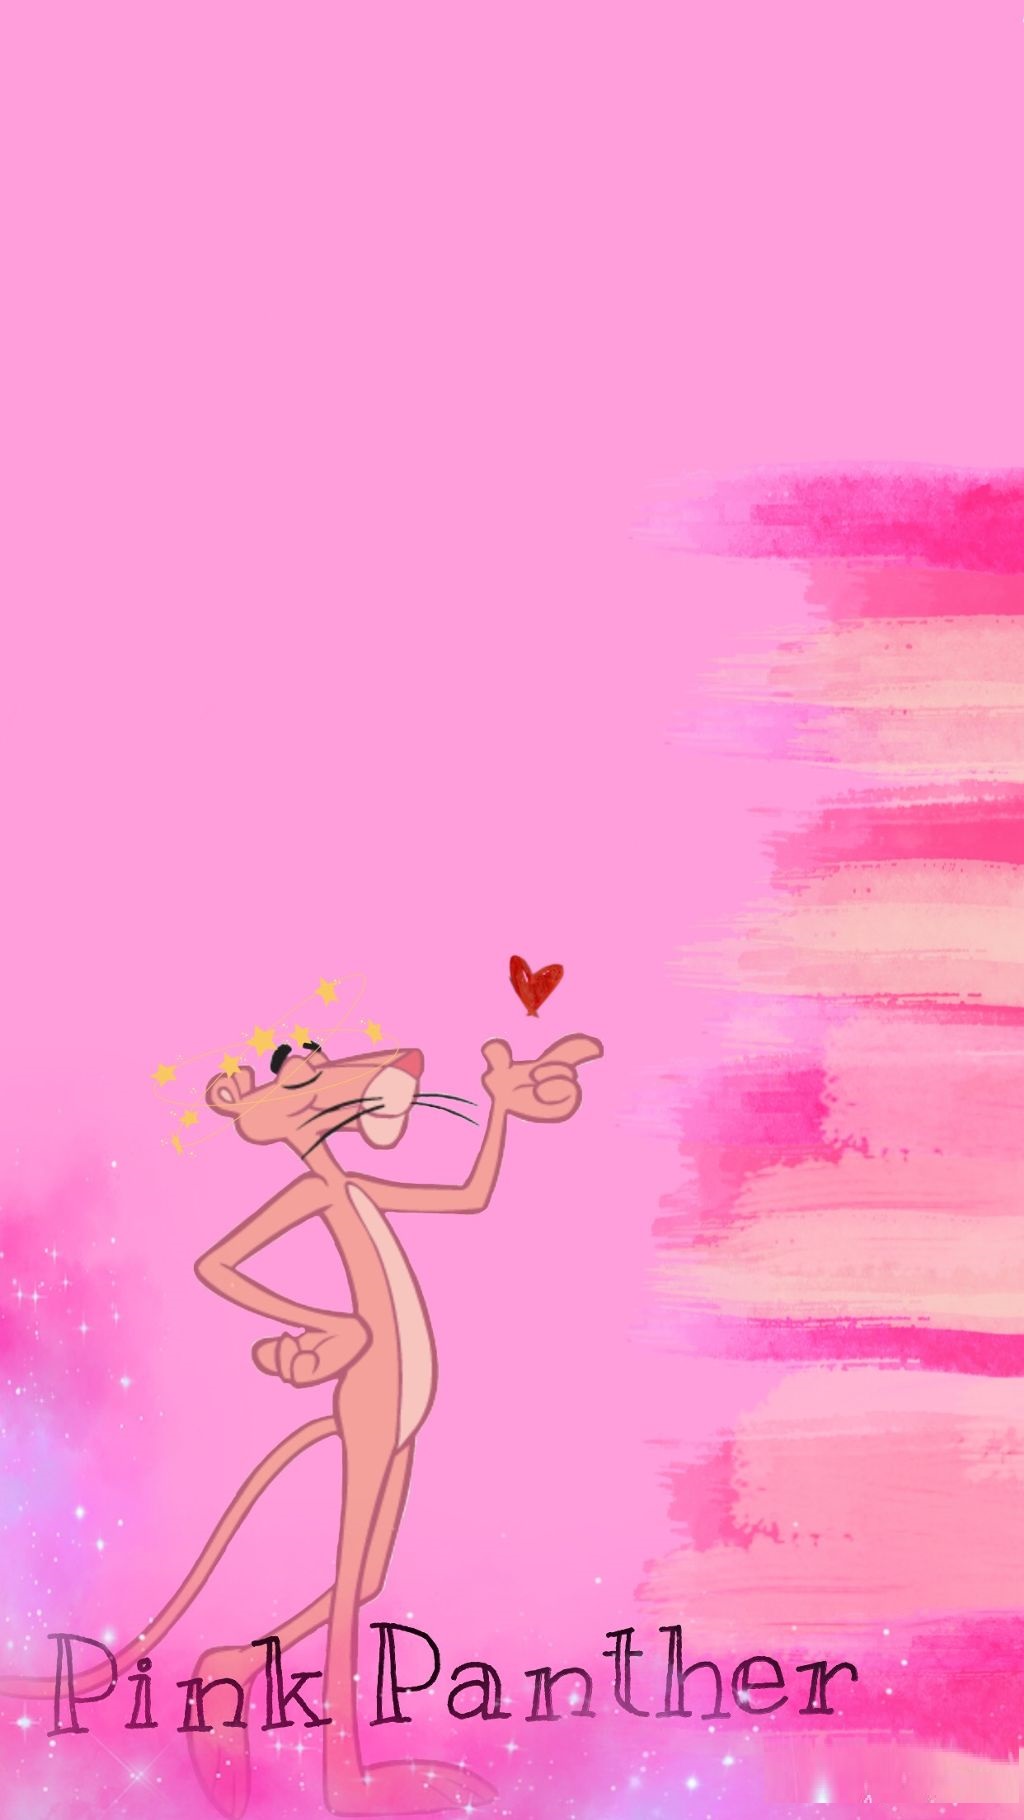 Pink Panther Wallpaper 1